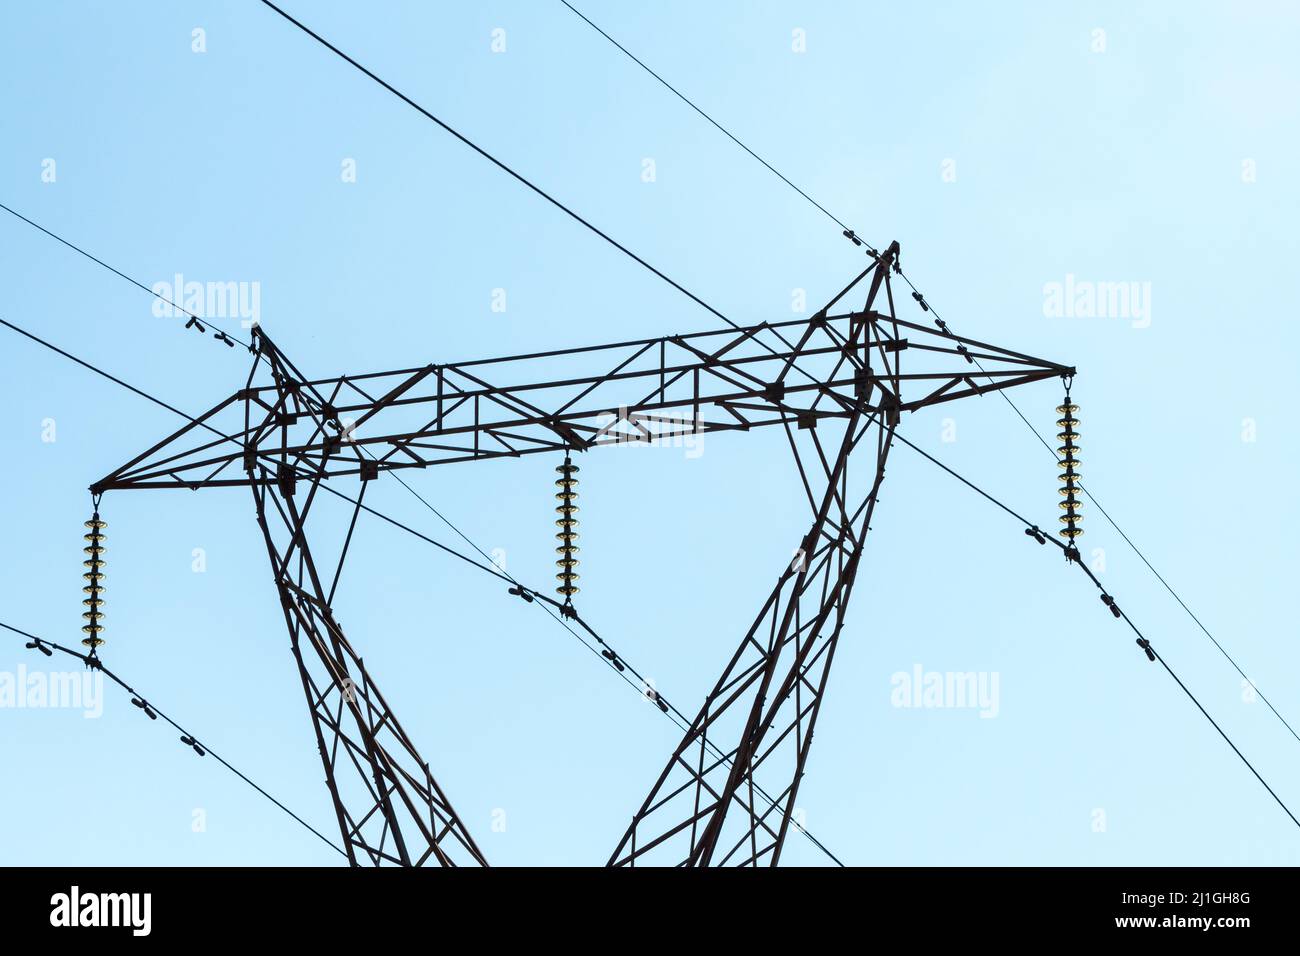 Nahaufnahme eines elektrischen Pylons mit Isolatoren, Stockbridge-Dämpfern und Abstandshaltern vor blauem Himmel in der südafrikanischen Konzepttechnologie Stockfoto